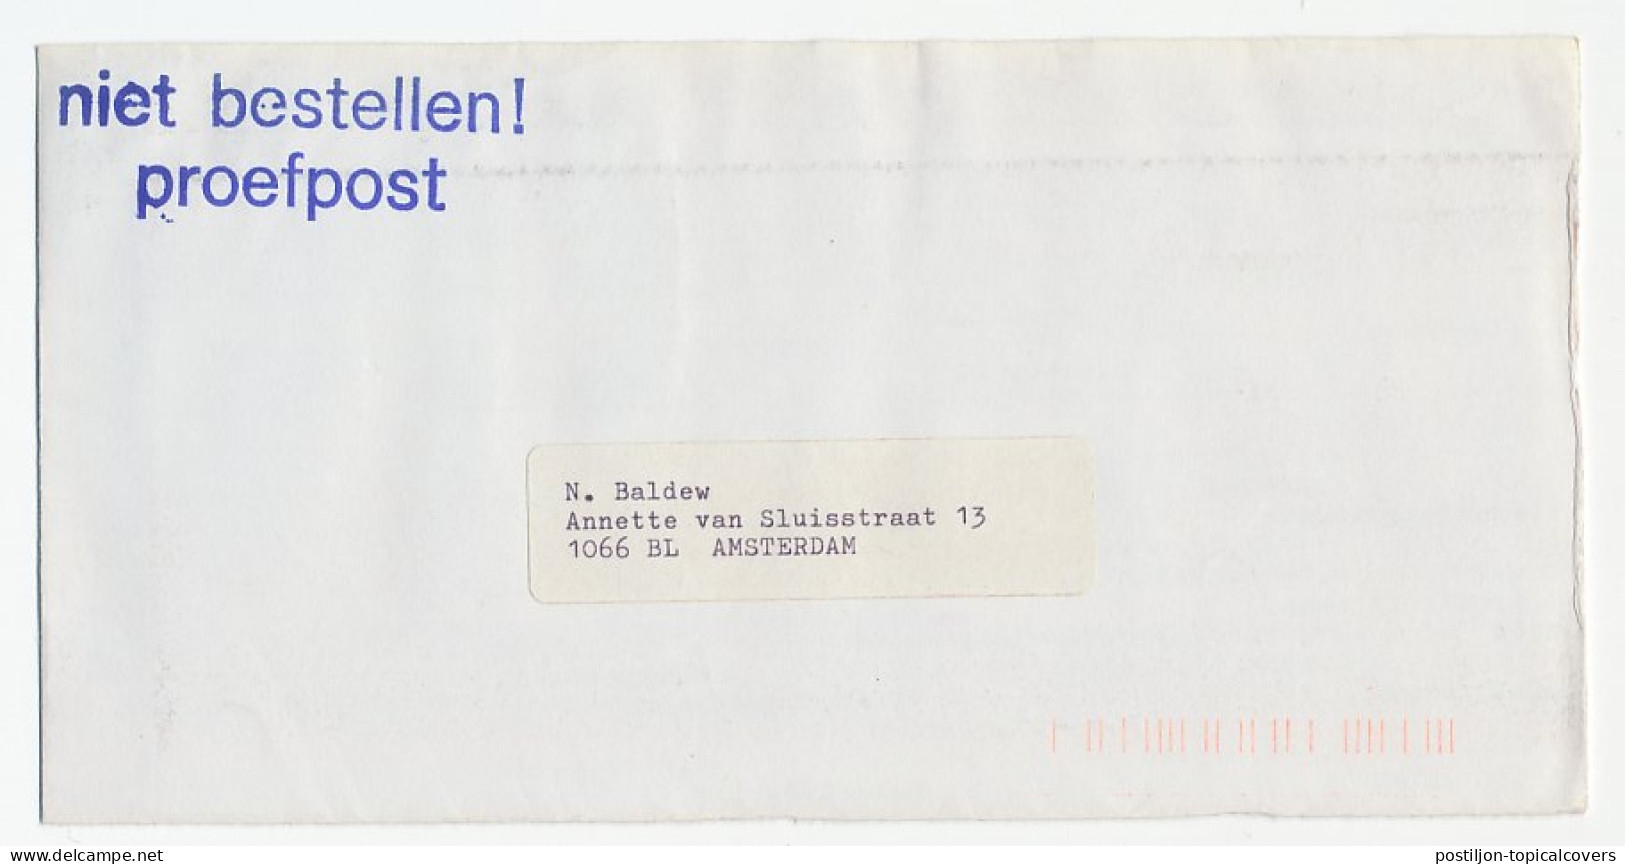 KPK Amsterdam 1979 - Proef / Test Envelop - Ohne Zuordnung